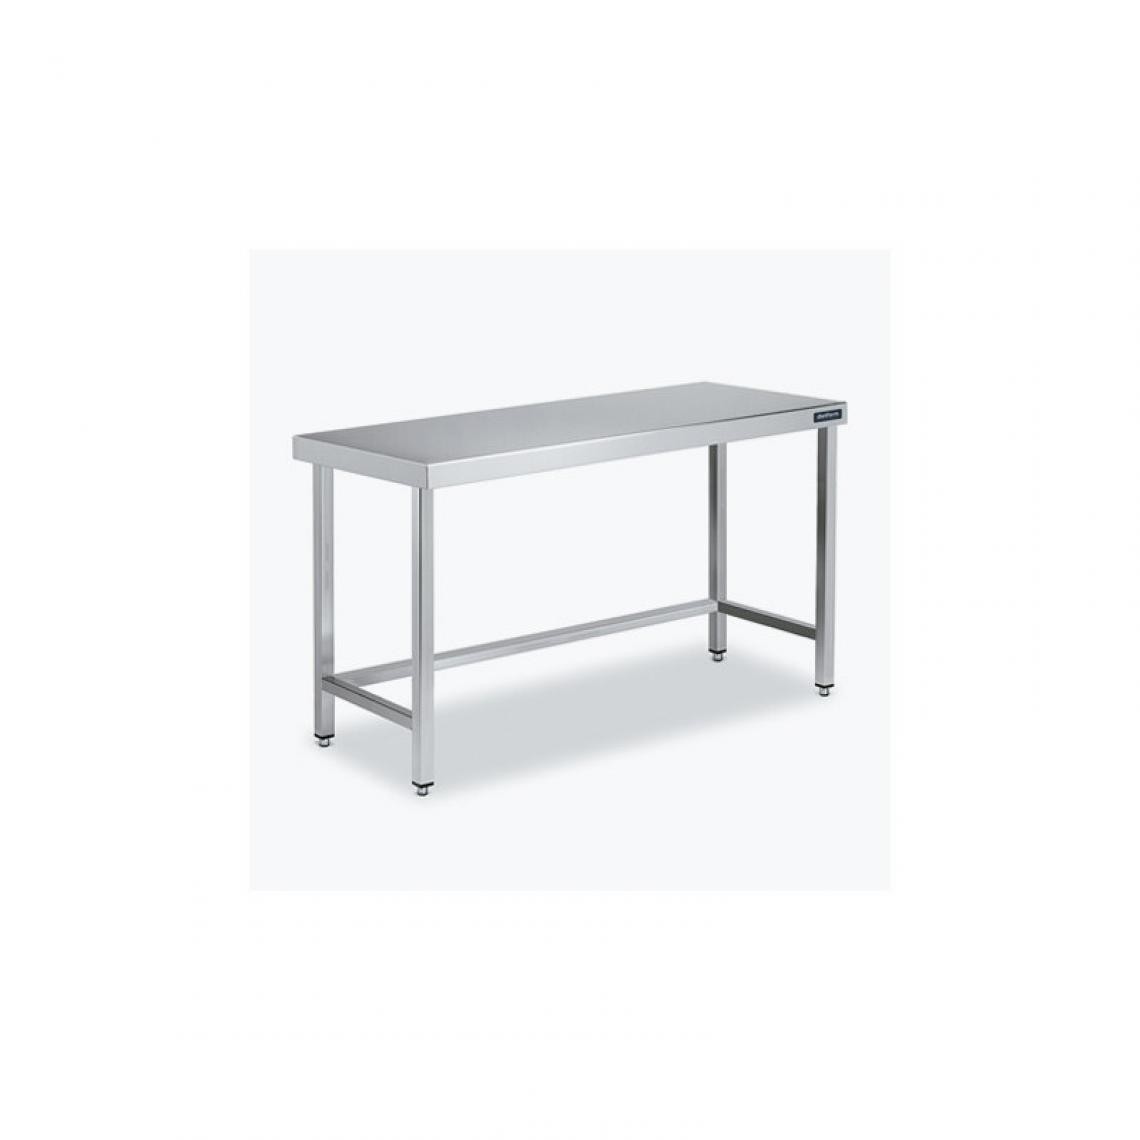 DISTFORM - Table Centrale 600x700 avec Renforts - Distform - Inox 18/101300x700x850mm - Tables à manger